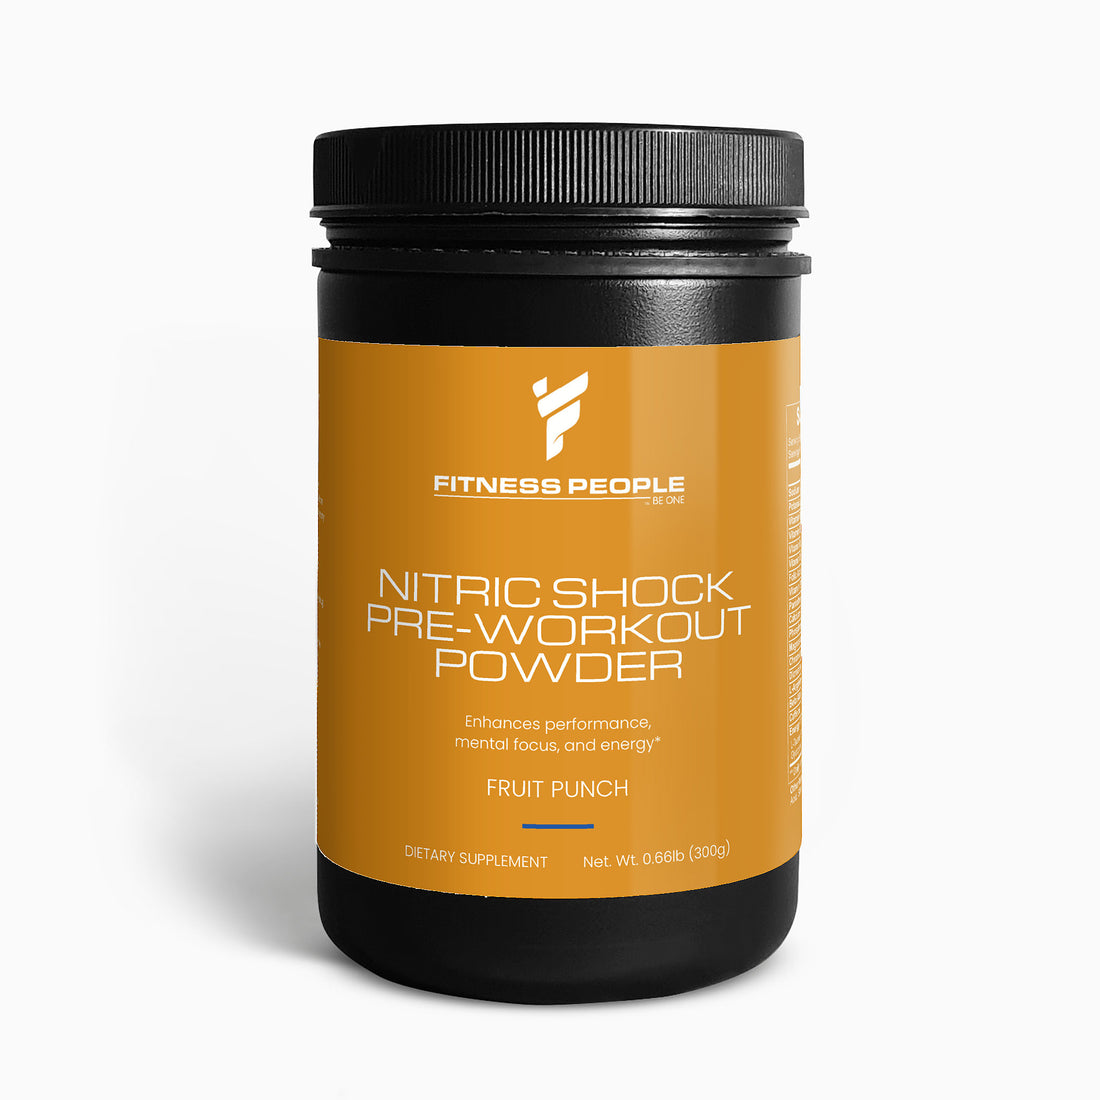 Nitric Shock Pre-Workout Powder